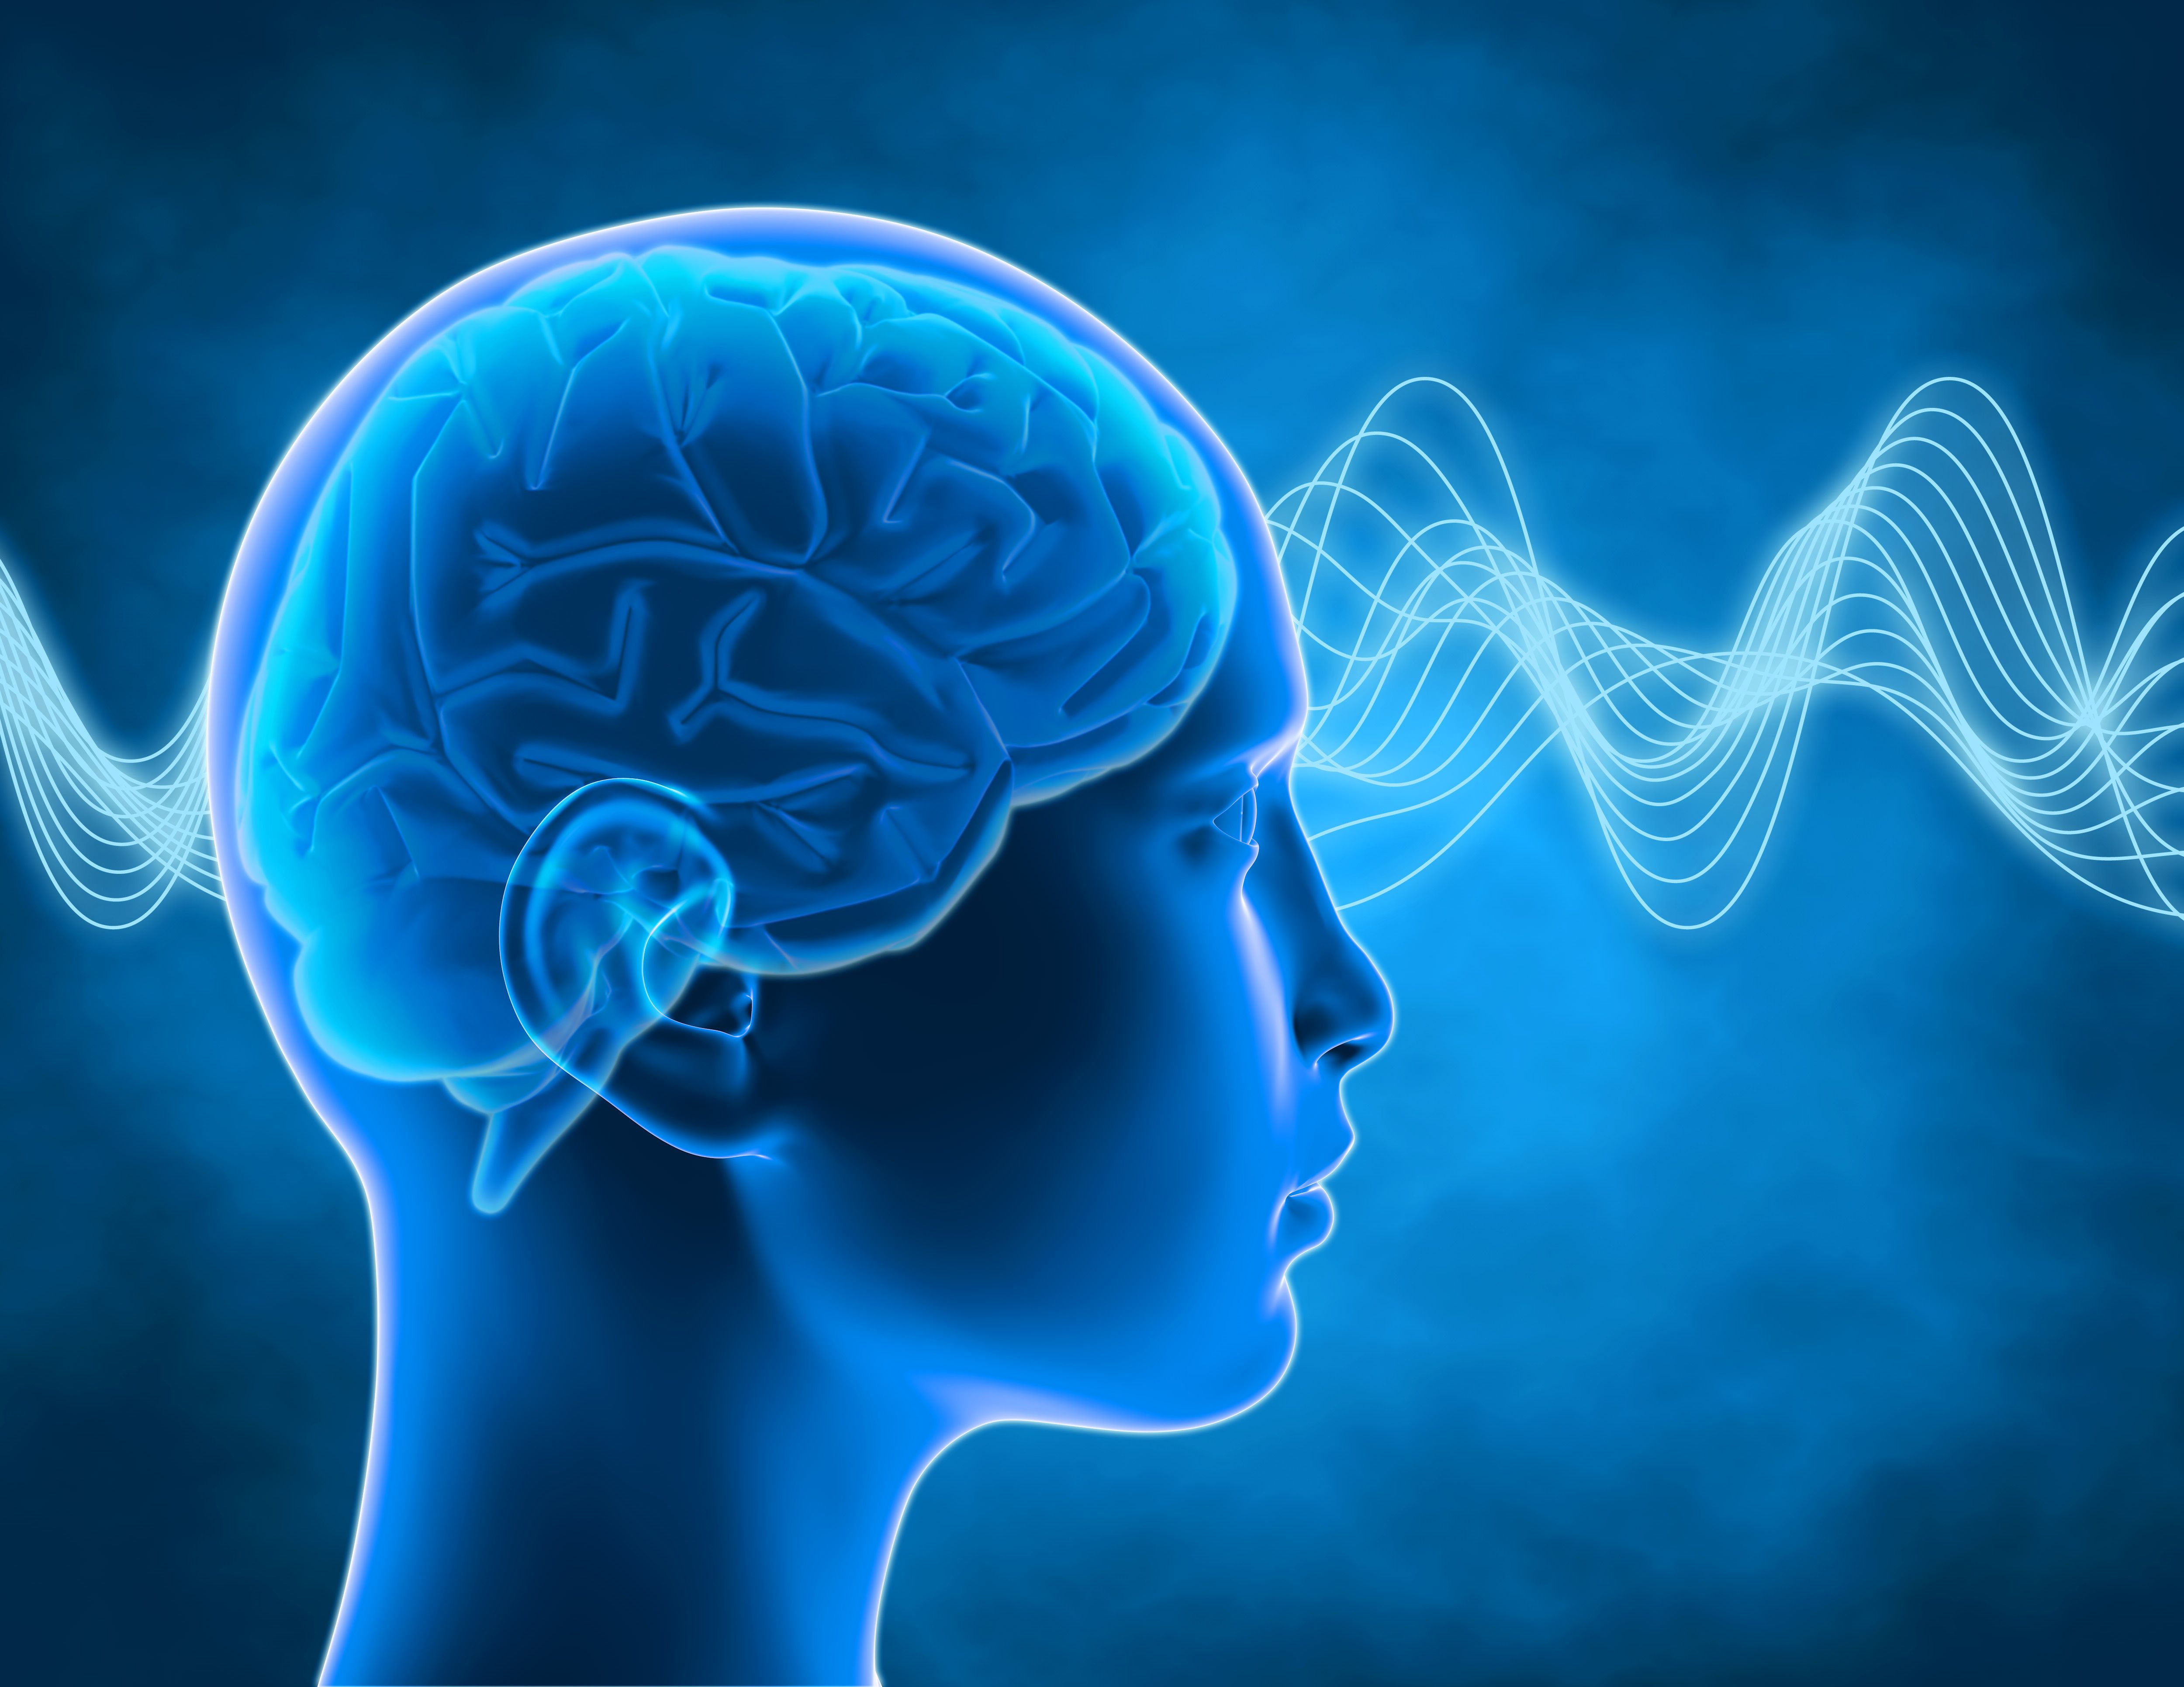 Brain disorder. Мозговая активность. Электромагнитные волны мозга.